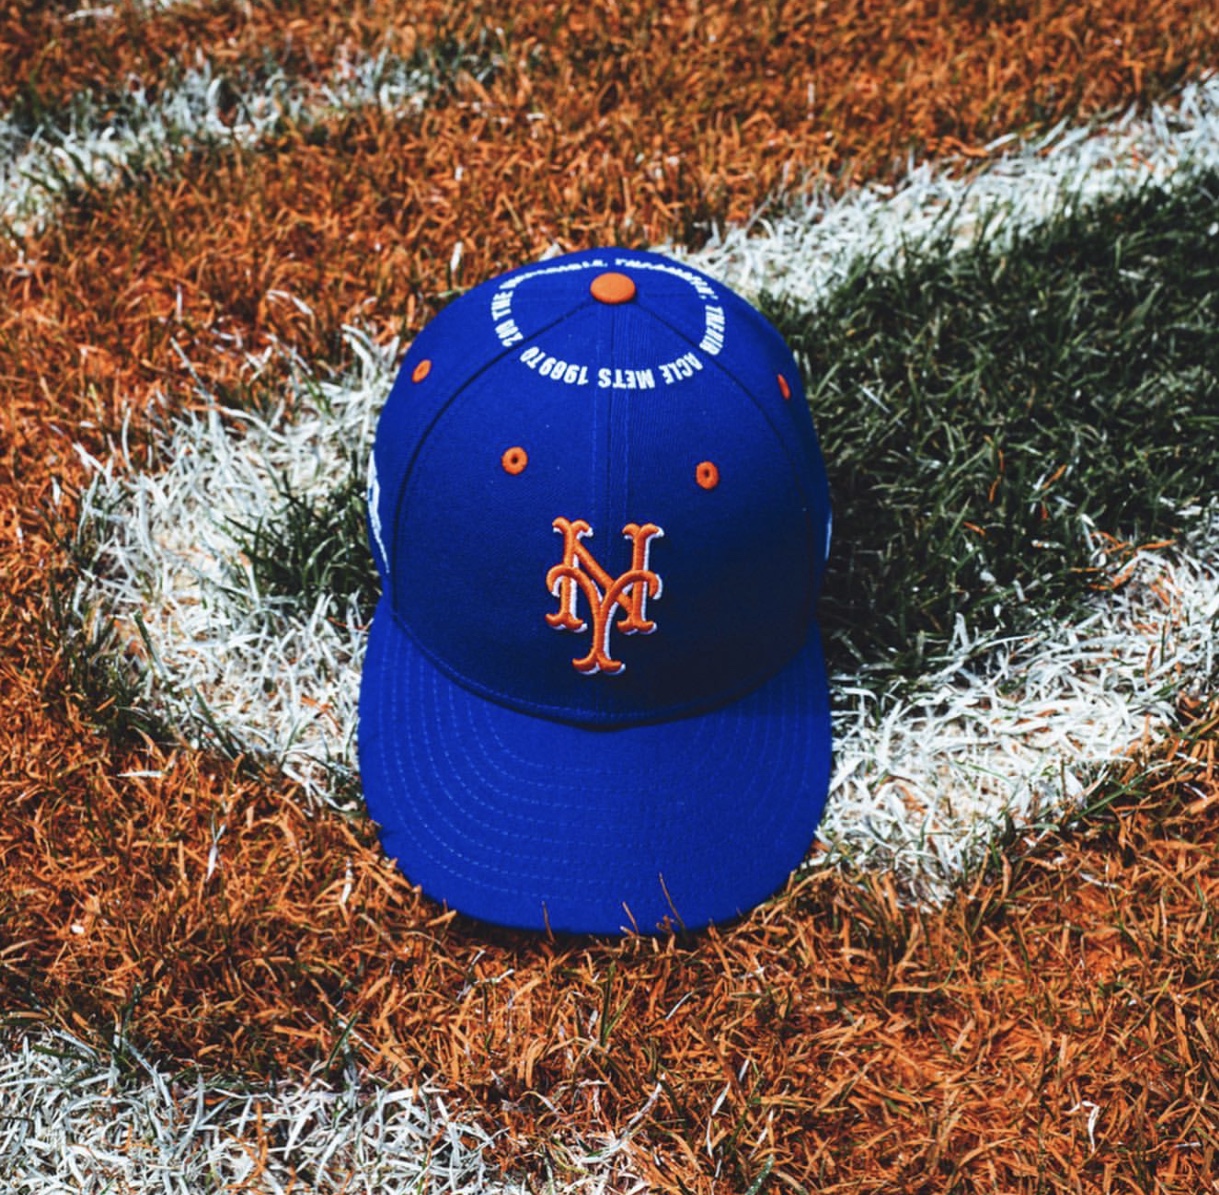 Futura 2000 x The NY Mets Collaboration